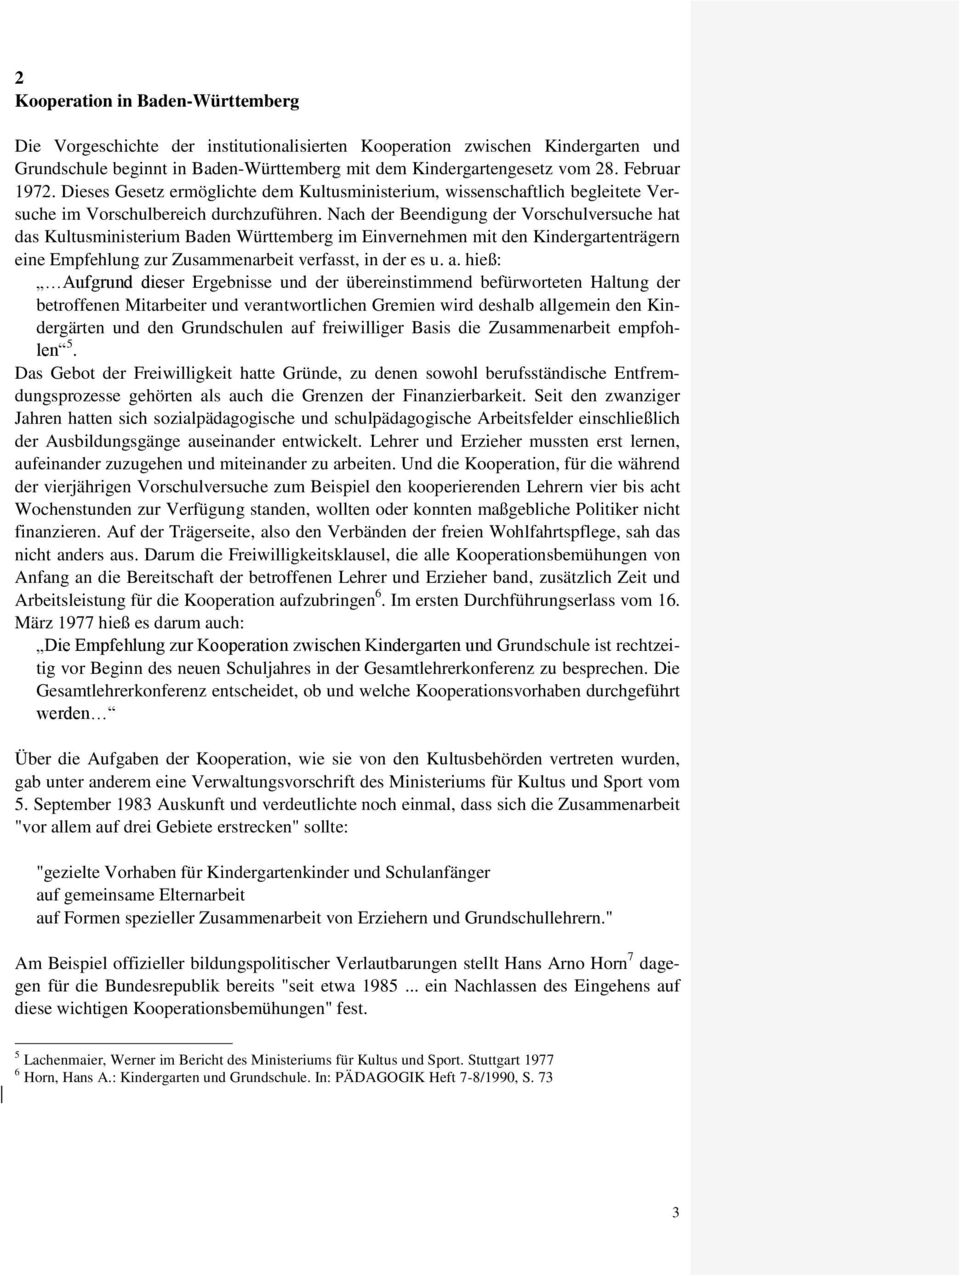 Nach der Beendigung der Vorschulversuche hat das Kultusministerium Baden Württemberg im Einvernehmen mit den Kindergartenträgern eine Empfehlung zur Zusammenarbeit verfasst, in der es u. a.